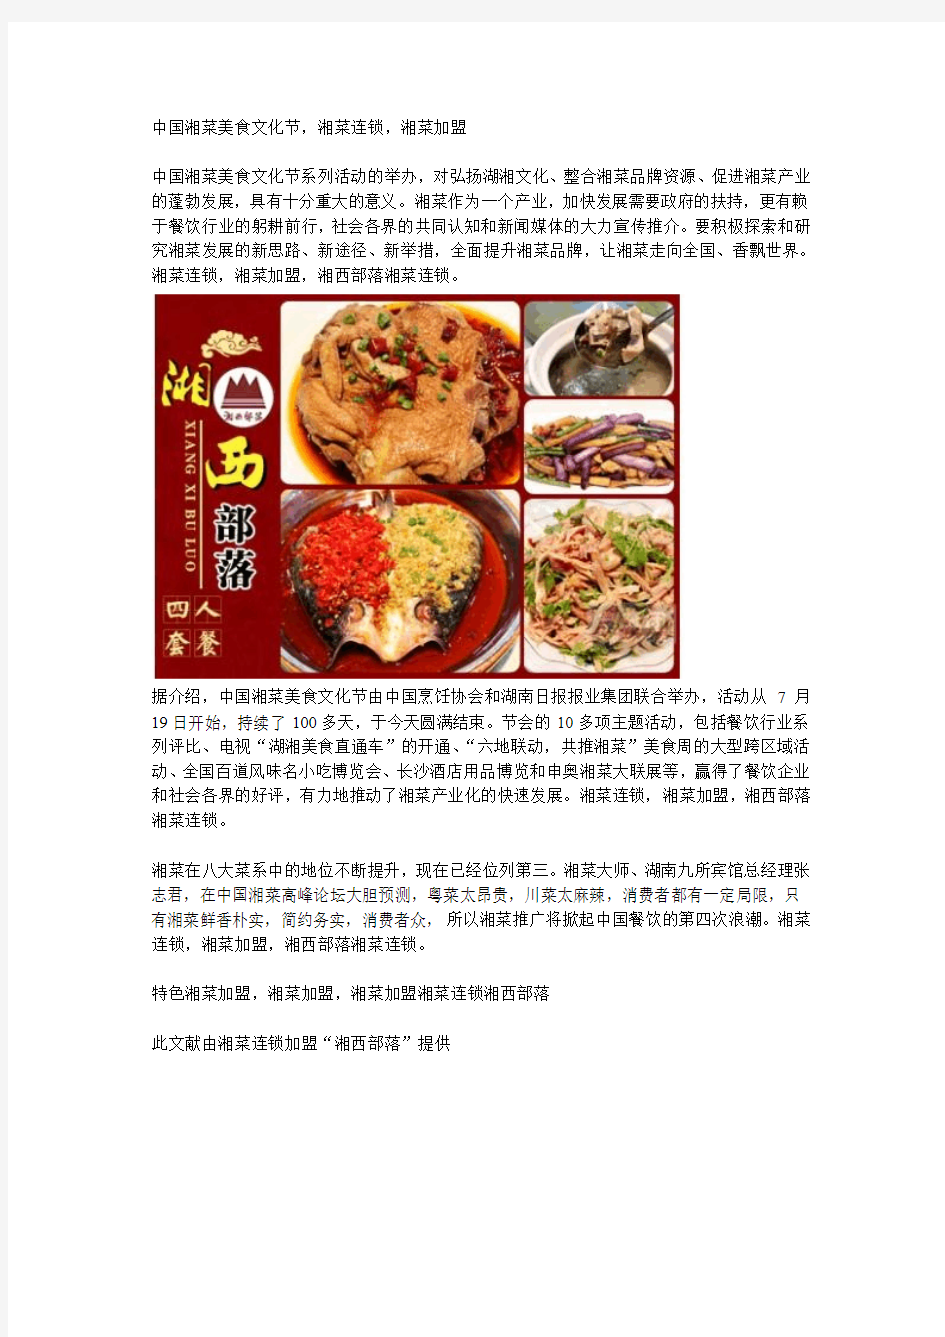 中国湘菜美食文化节,湘菜连锁,湘菜加盟